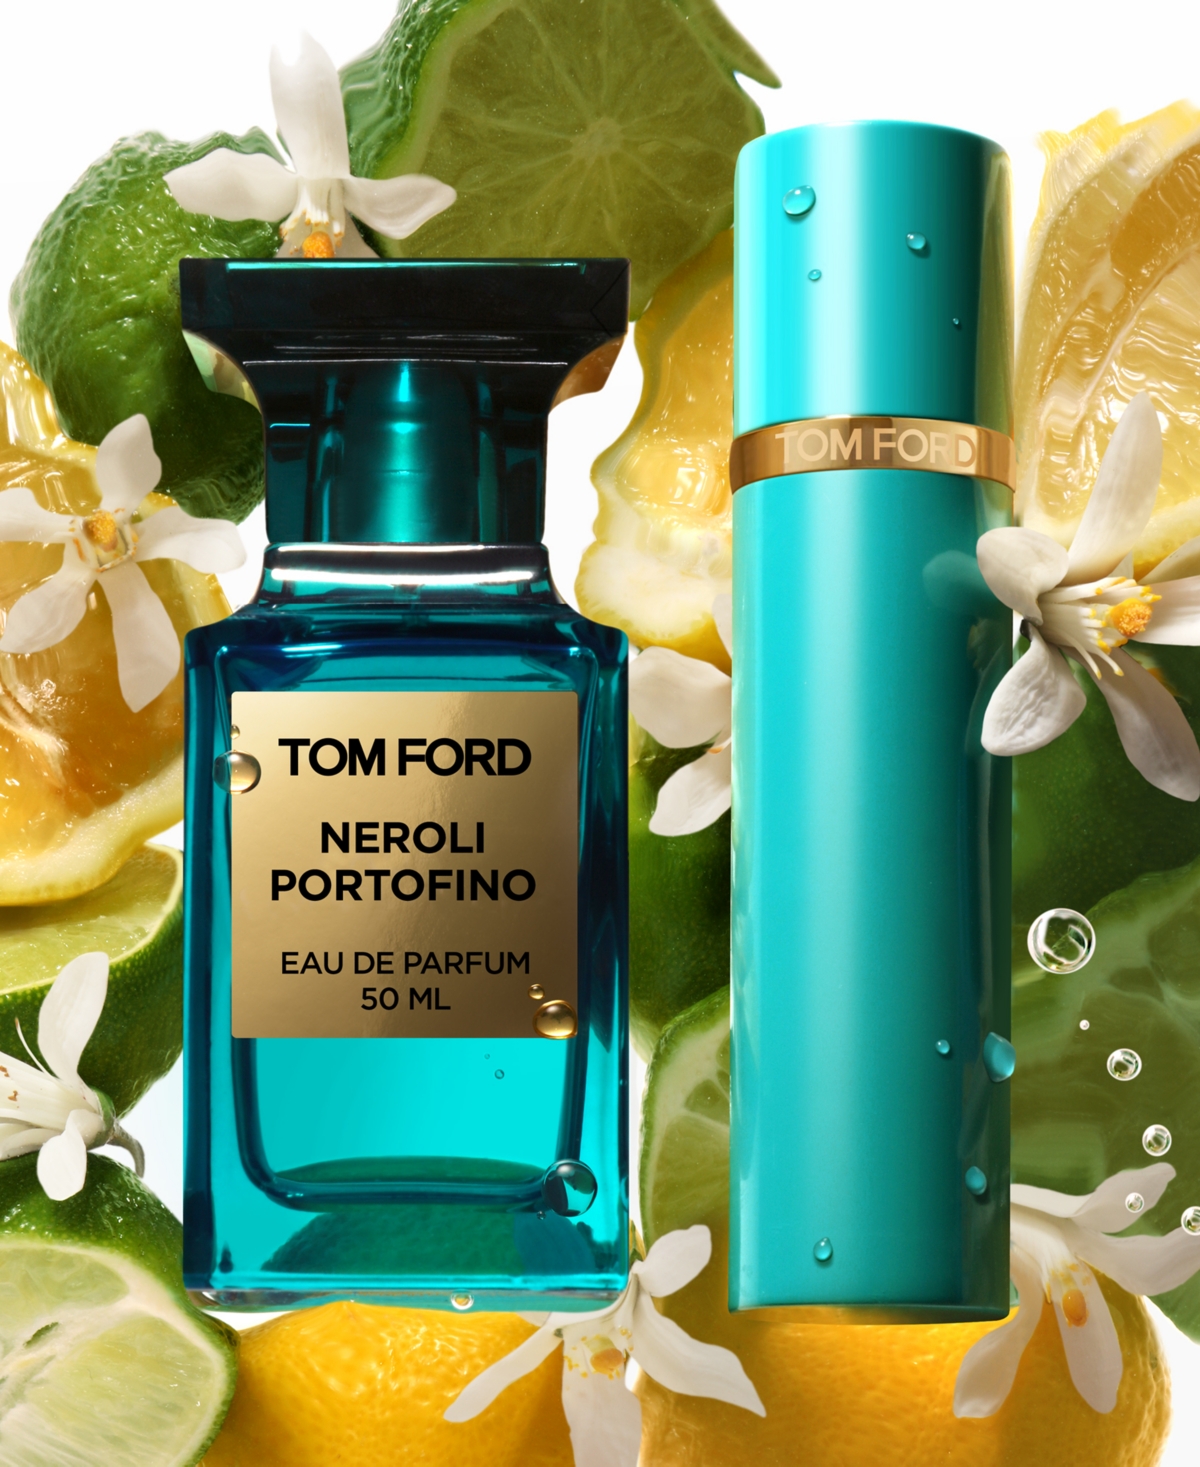 TOM FORD Neroli Portofino Eau de Parfum Fragrance, 1.7 oz | Smart Closet